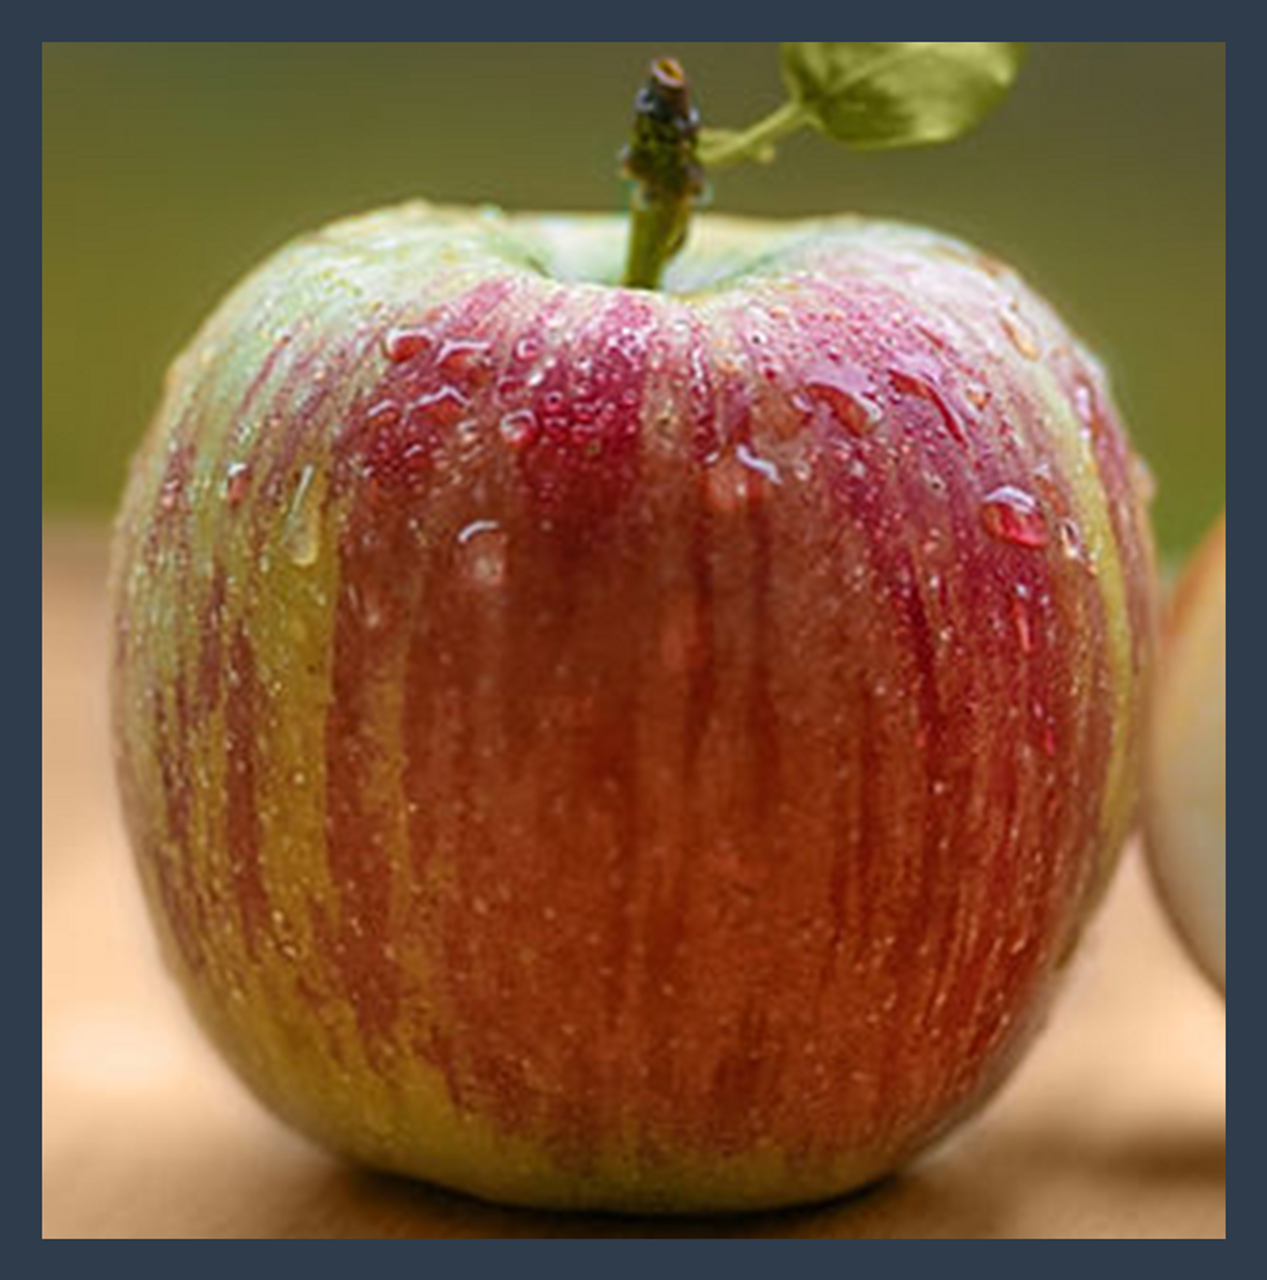 gravenstein apple